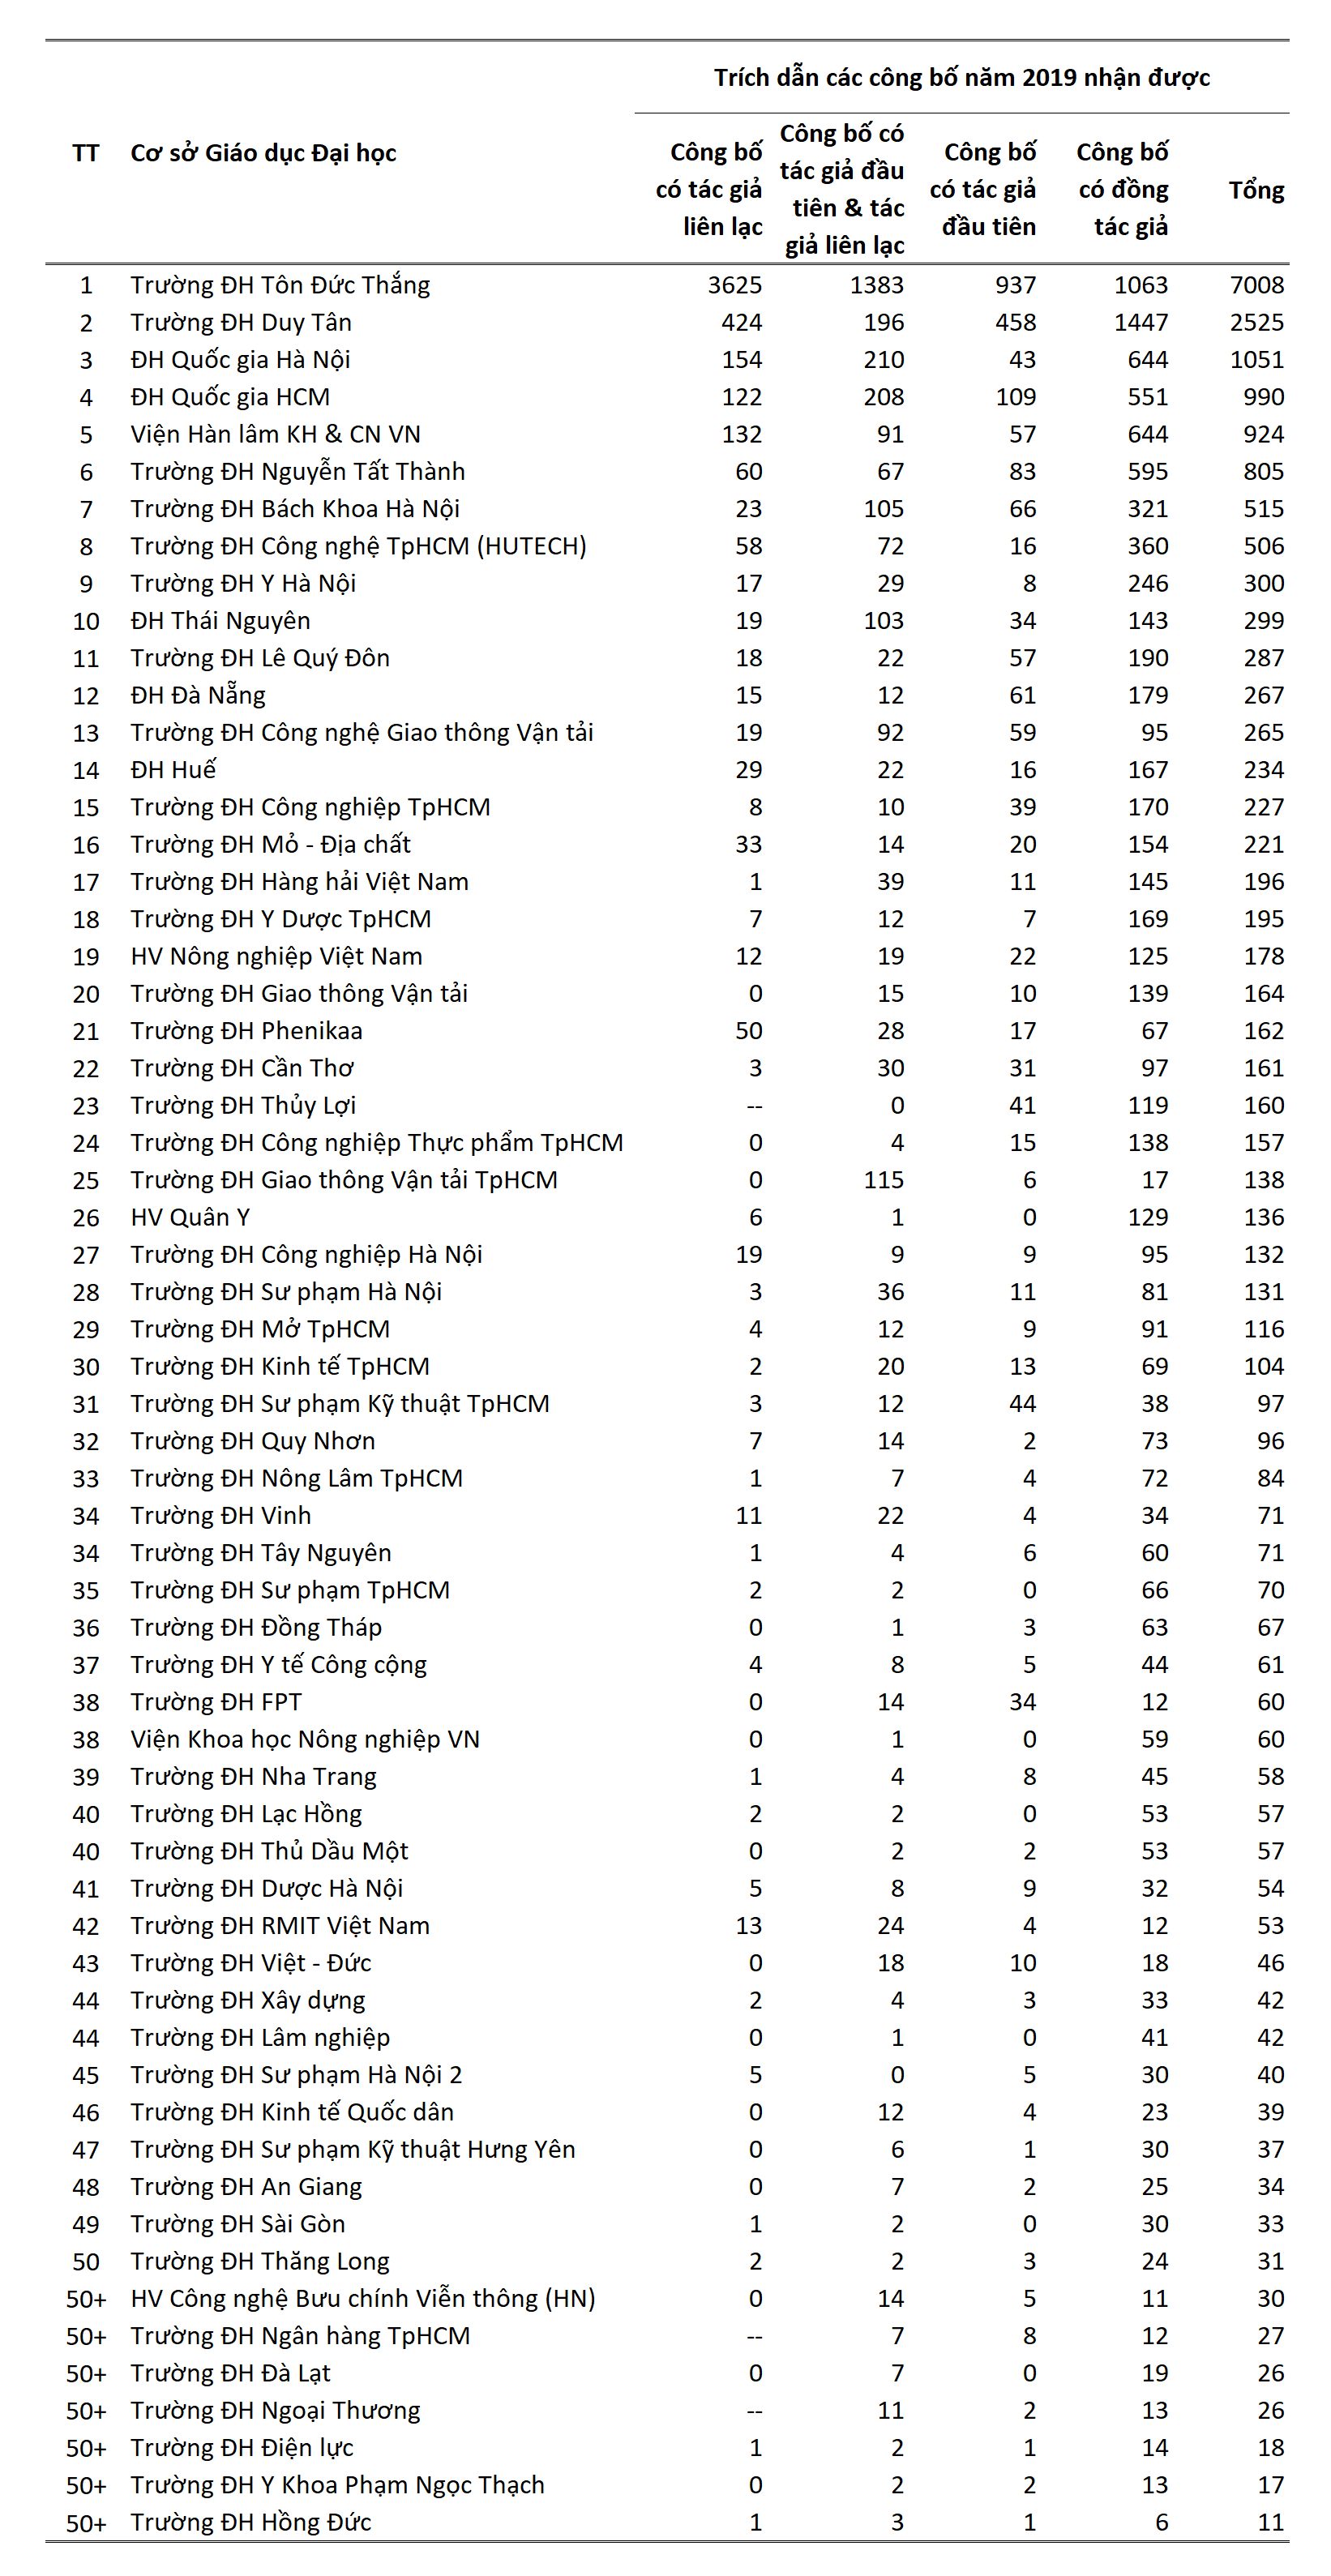 Bảng 2. Tổng trích dẫn các công bố năm 2019 của top 50 cơ sở GDĐH có năng suất tốt nhất Việt Nam. Giá trị “0” tương ứng đơn vị đã có công bố, nhưng chưa được trích dẫn. Ký hiệu “--